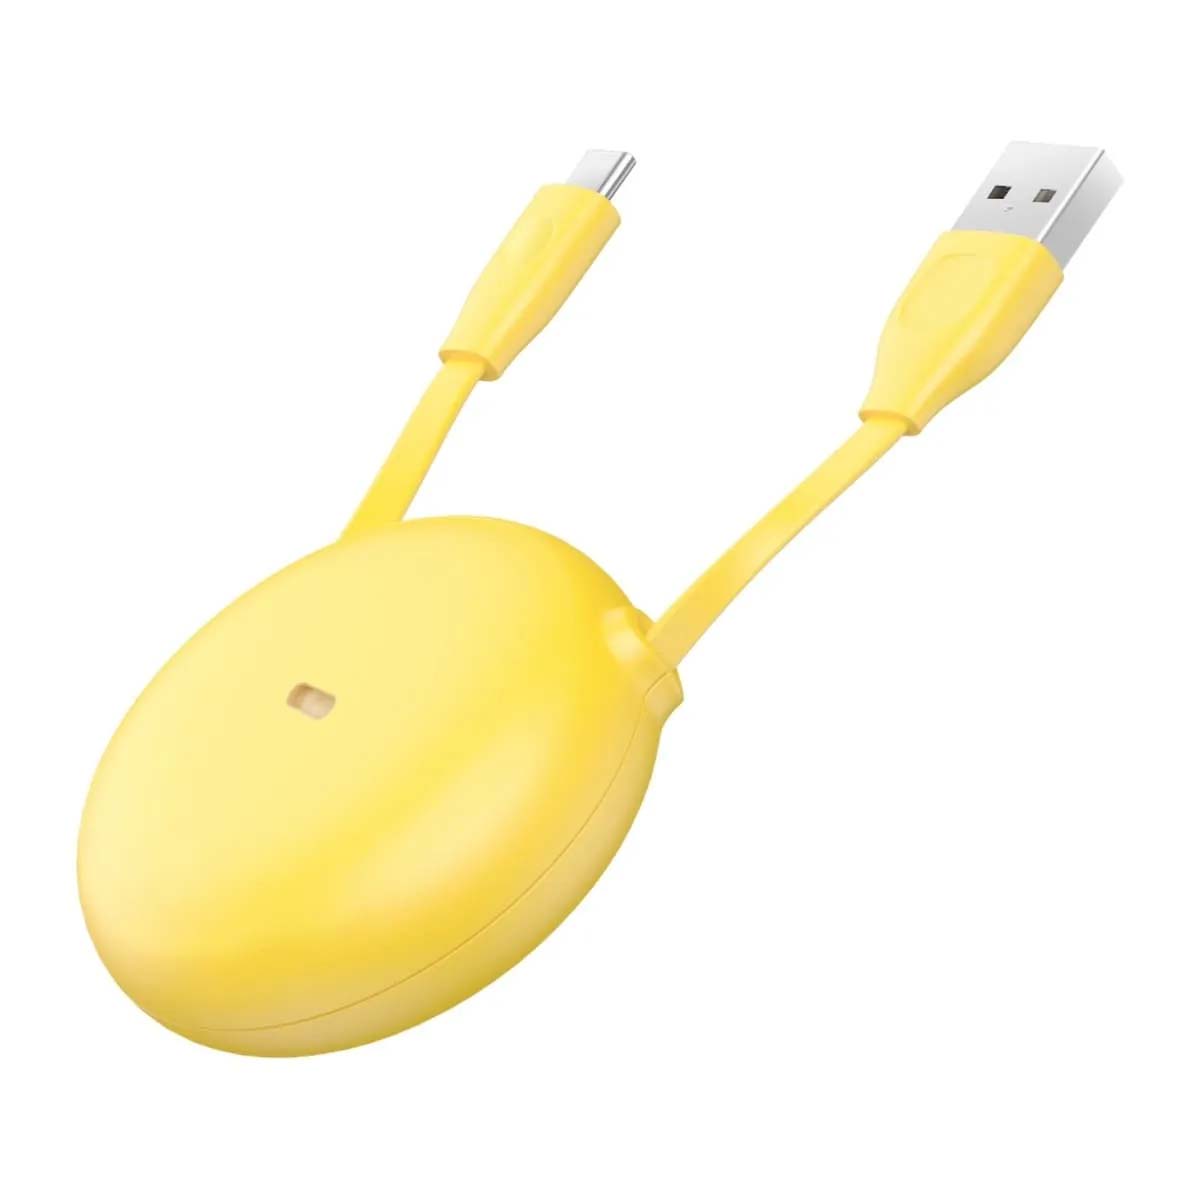 Кабель рулетка Baseus Let`s go USB Type C, 2A, длина 1 метр, цвет желтый